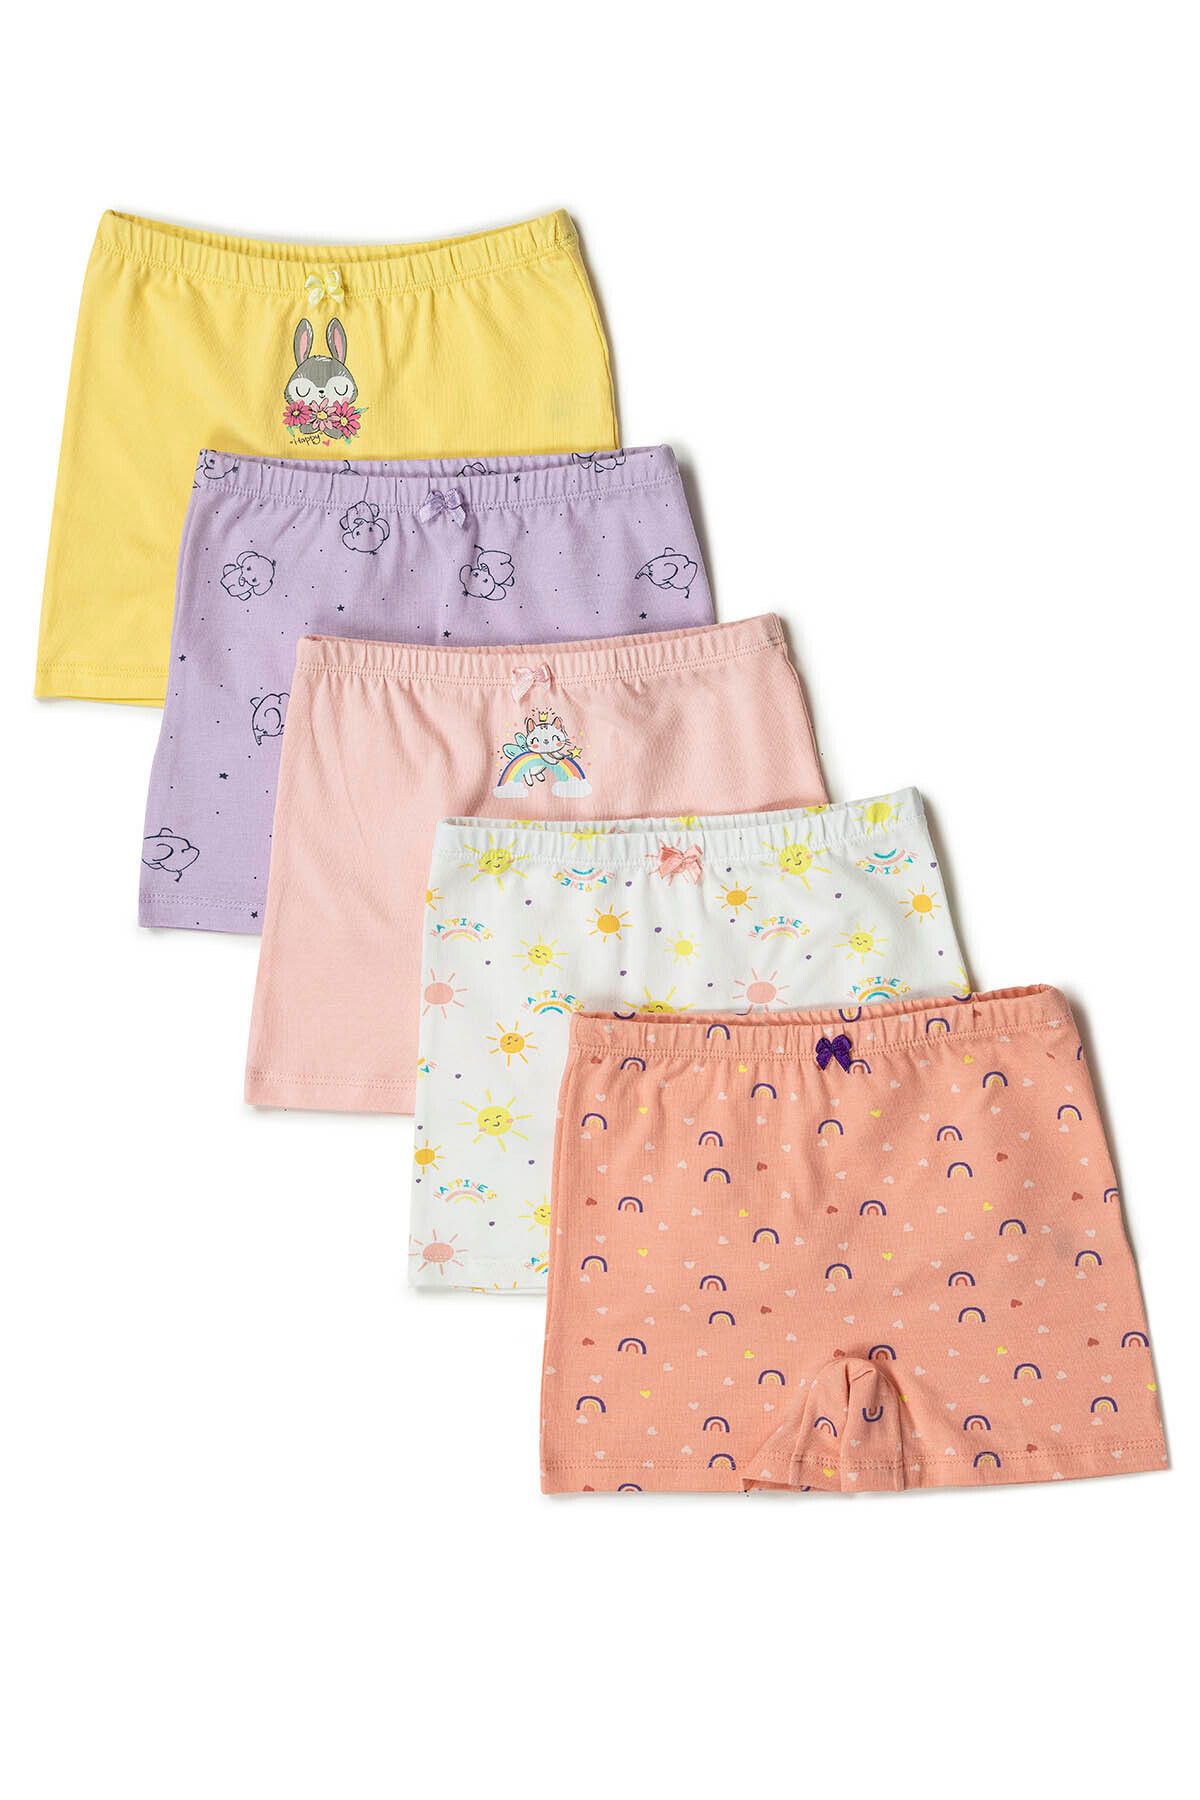 ÖZKAN underwear Özkan 41602 5'li Paket Kız Çocuk Karışık Renkli Desenli Pamuklu Yumuşak Rahat Şort Boxer